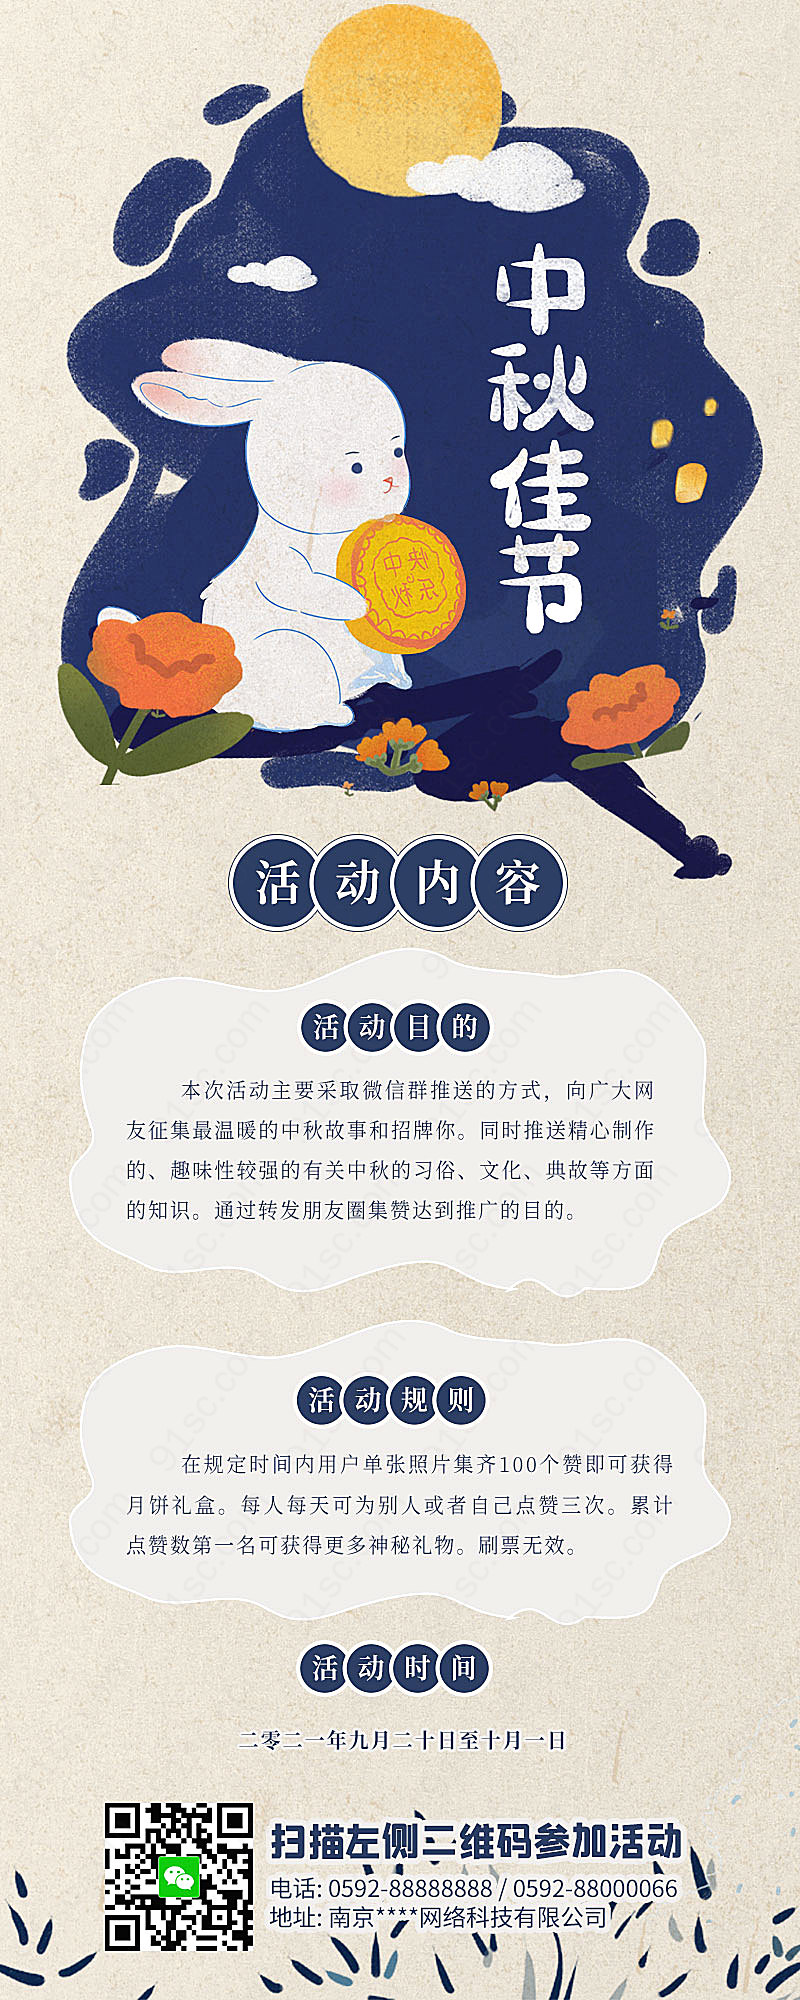 祥云剪纸星兔子月亮中秋节文化活动手机海报